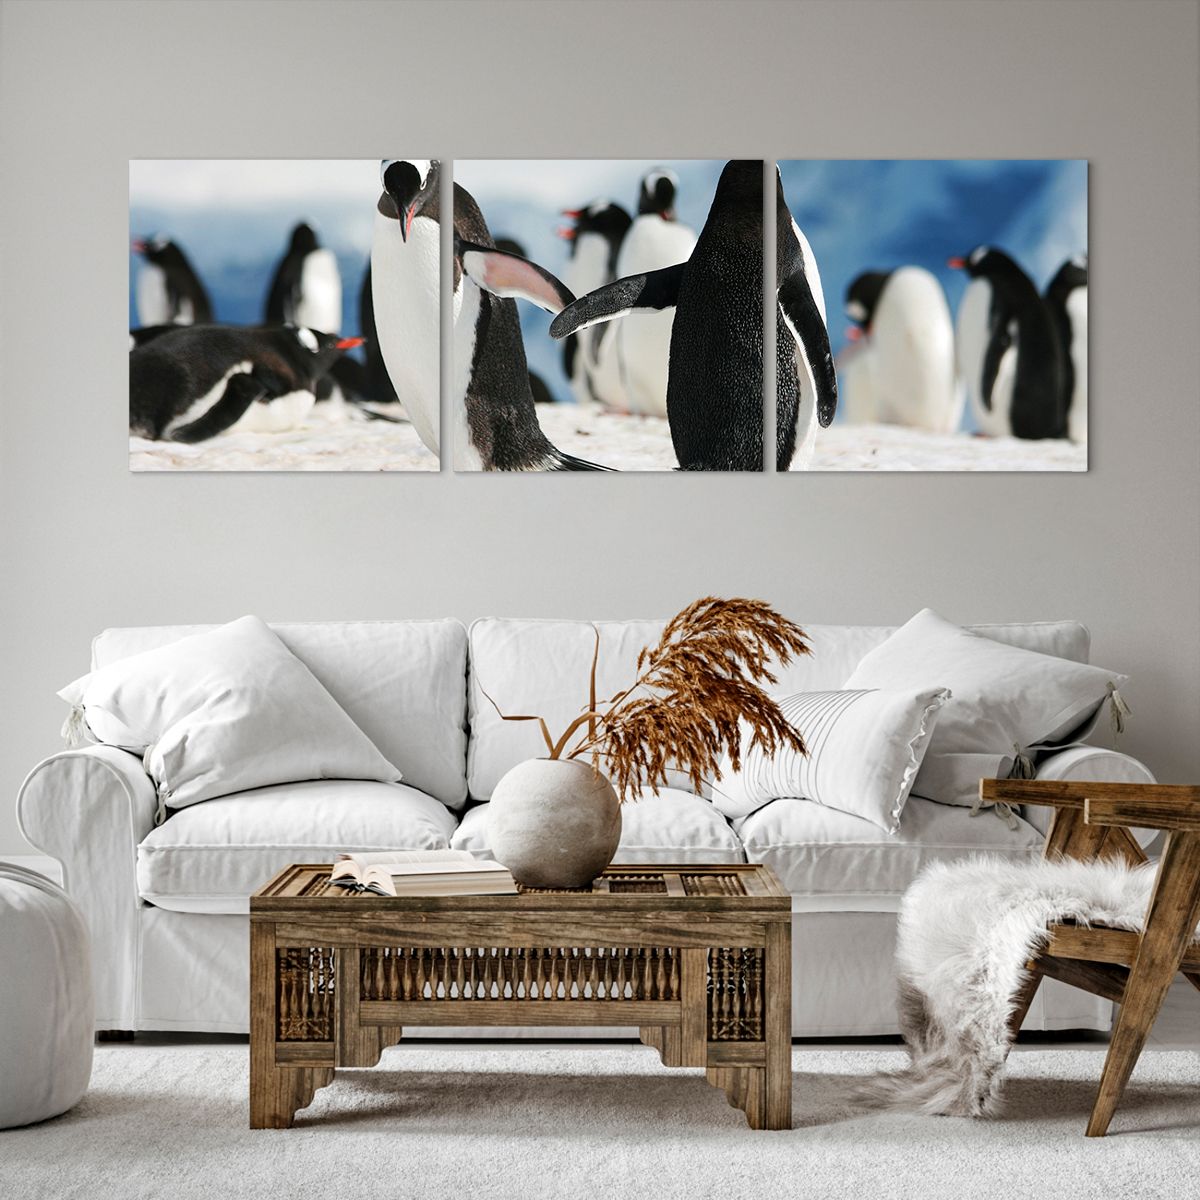 Obrazy na płótnie Pingwin, Obrazy na płótnie Antarktyda, Obrazy na płótnie Krajobraz, Obrazy na płótnie Śnieg, Obrazy na płótnie Lód